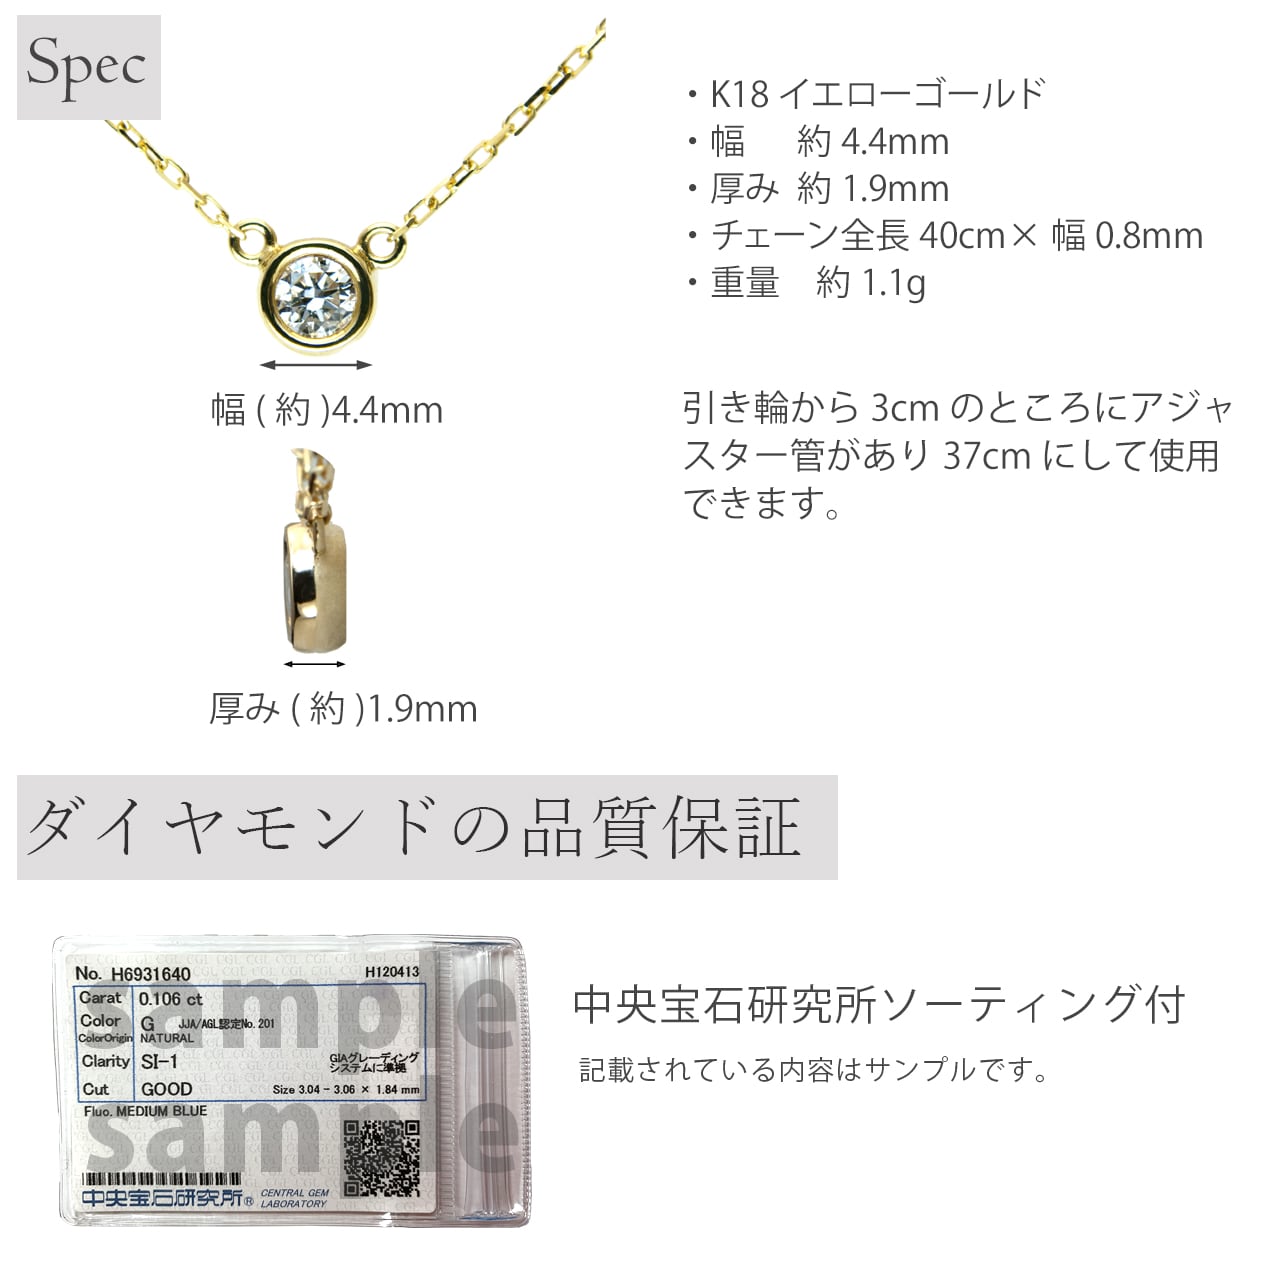 【K18YG 0.1 Fカラー SI-1 VERY GOOD】 ダイヤモンドグレード保証 ネックレス【LA LUCE】